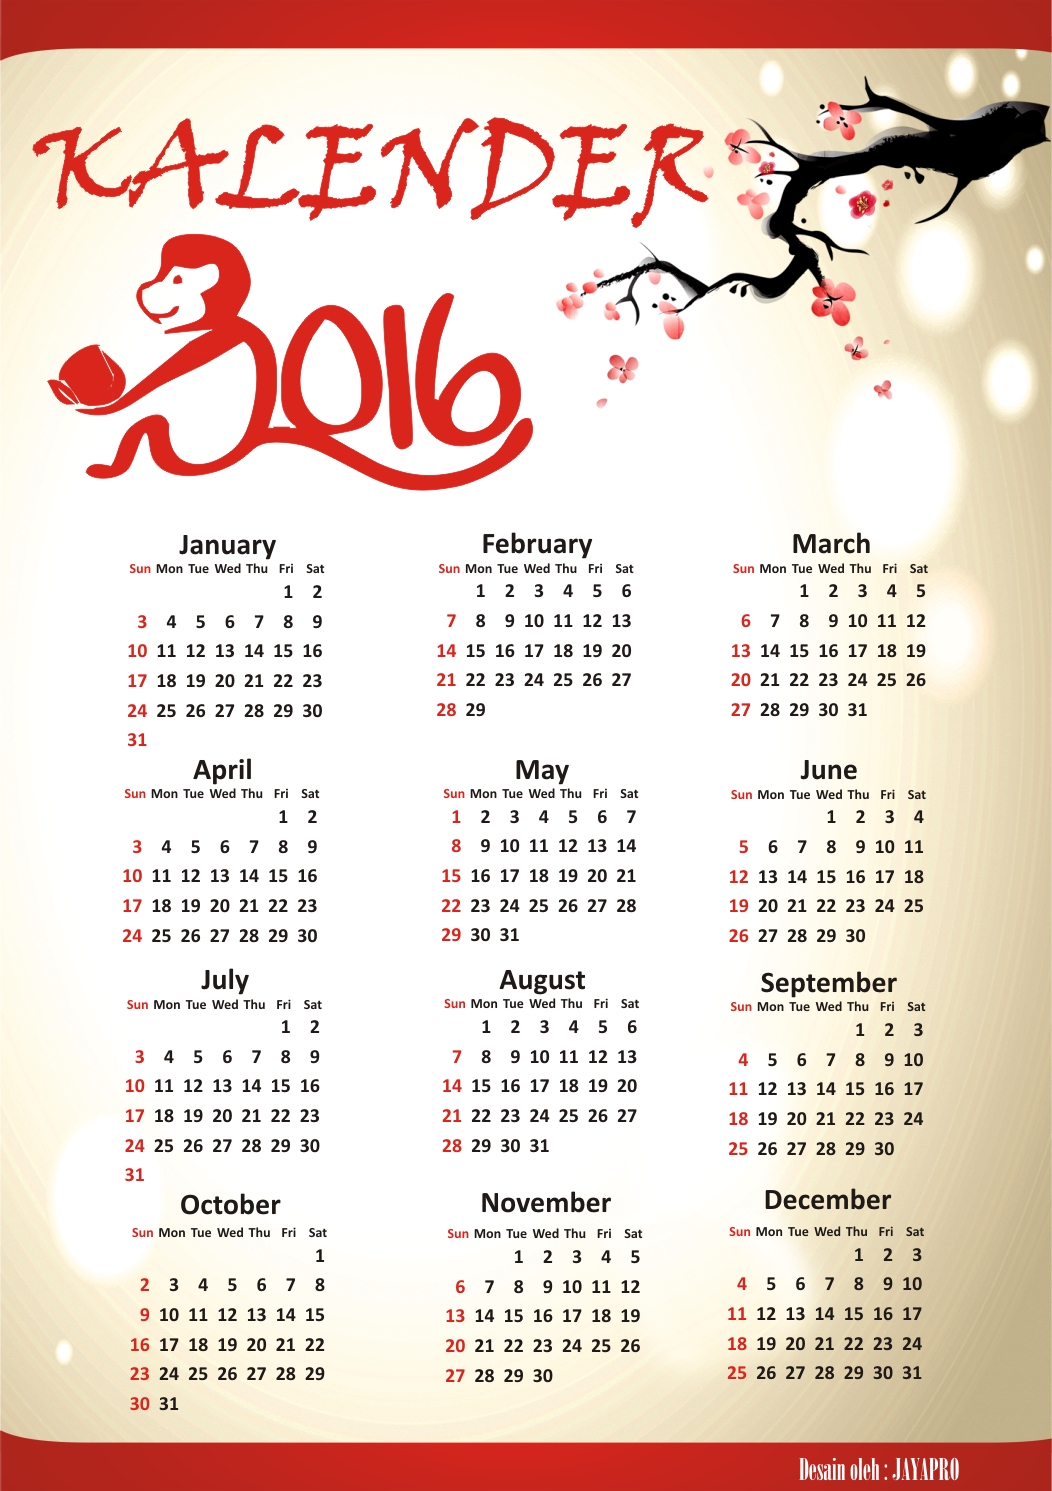 Download kalender 2016 download template kalender 2016 